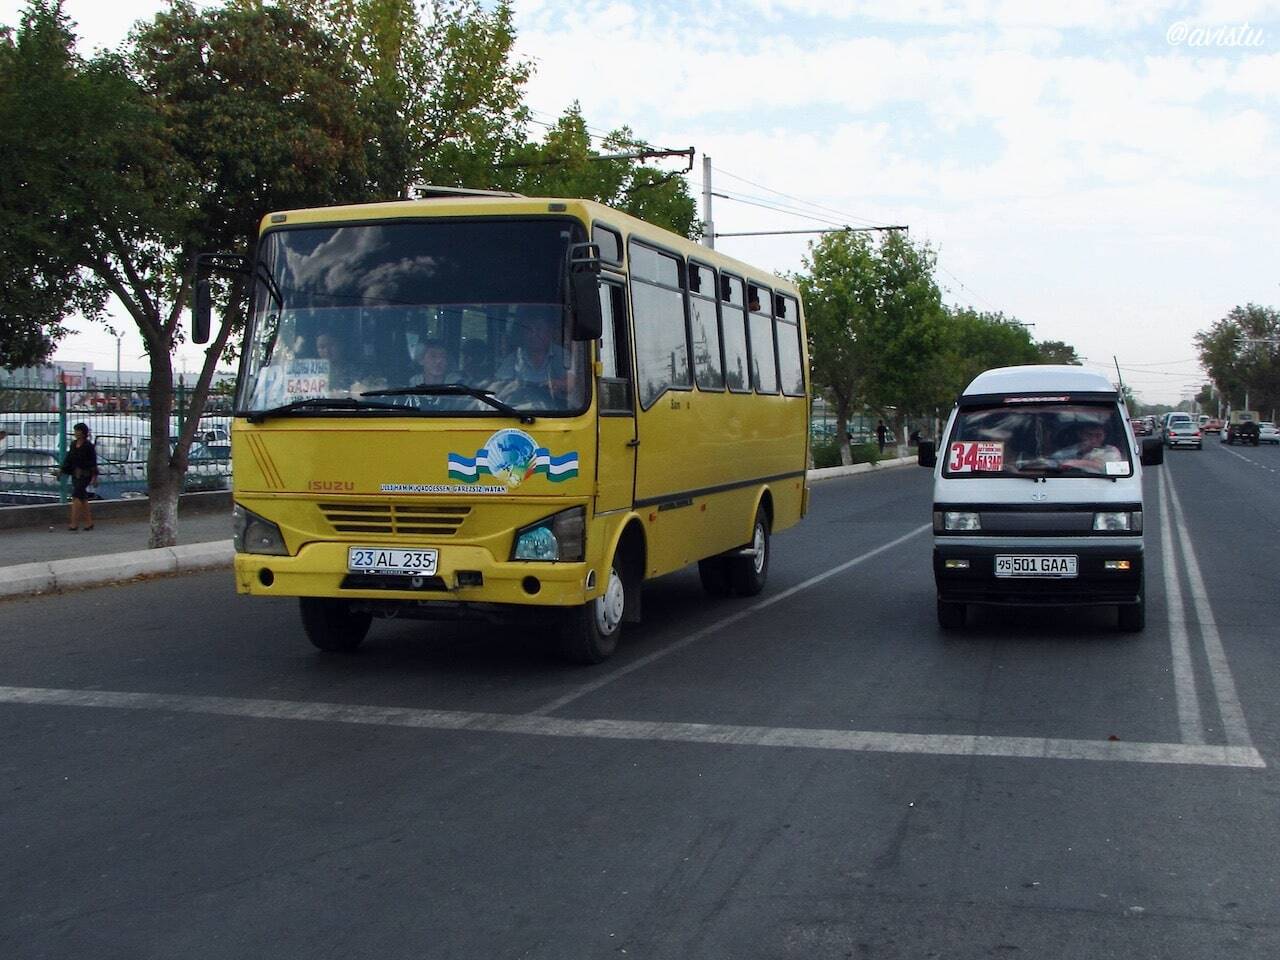 Minibus y furgoneta, transportes urbanos típicos en Uzbekistán [(c)Foto: @avistu]